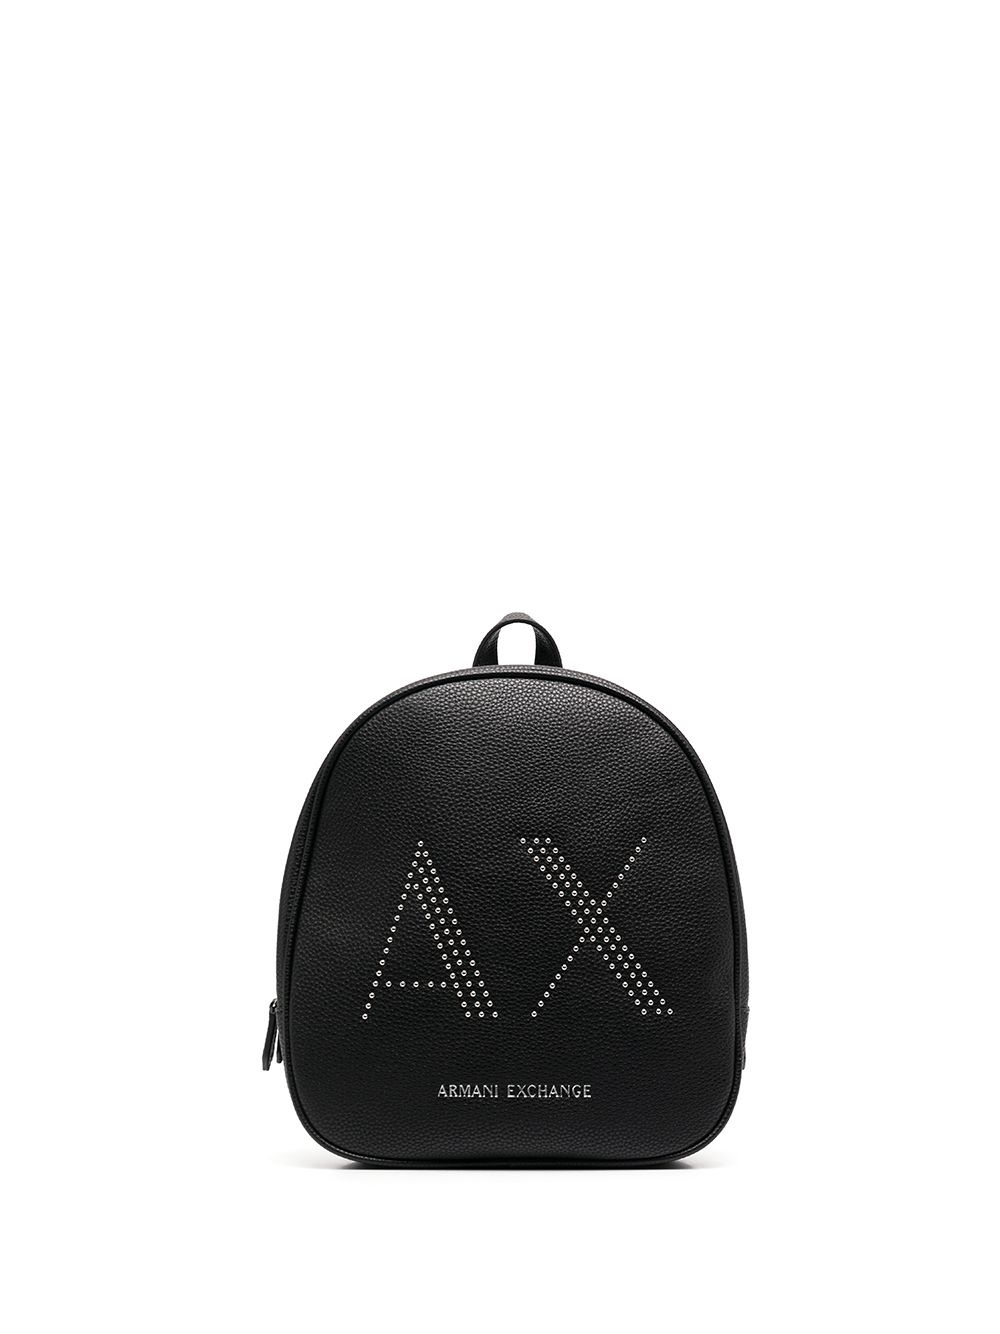 фото Armani exchange рюкзак с логотипом